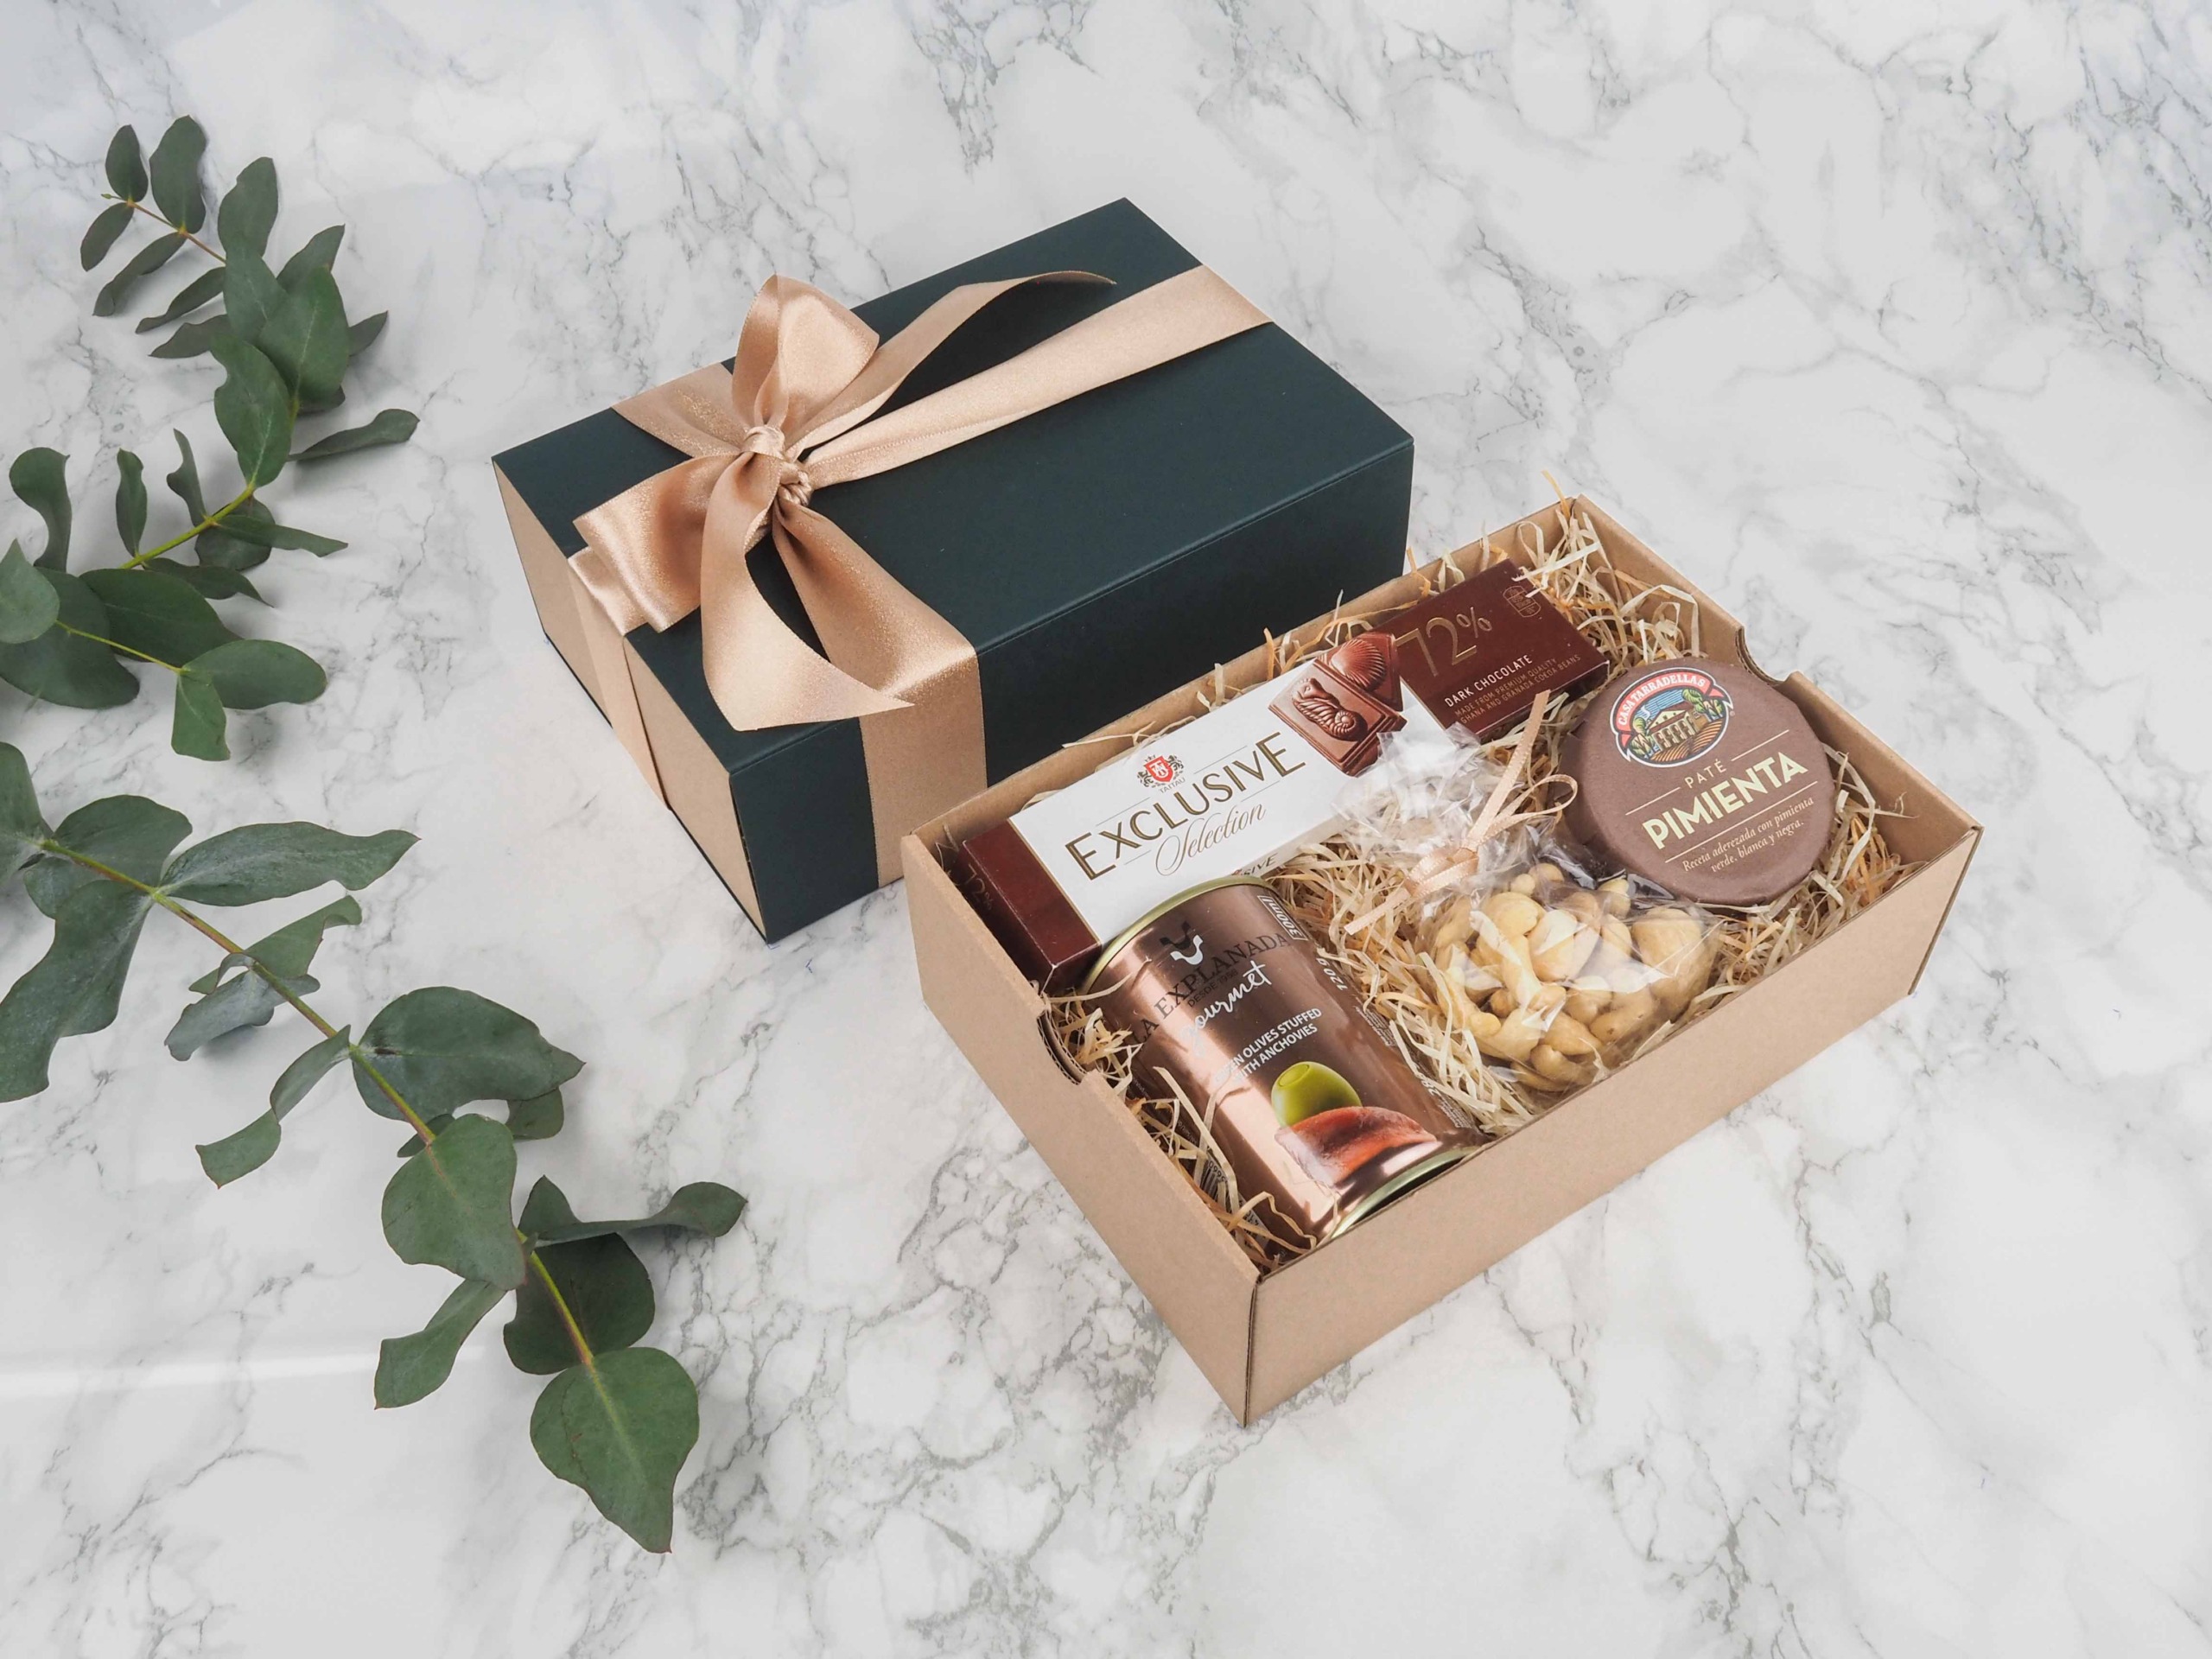 Dárkový balíček Exclusice Gourmet je speciální svou elegantní vysouvací krabičkou, kterou zdobí atlasová stuha. Dárková krabice v sobě obsahuje mléčnou čokoládu, zelené olivy s ančovičkami, mix oříšků a španělskou paštiku s pepřem.